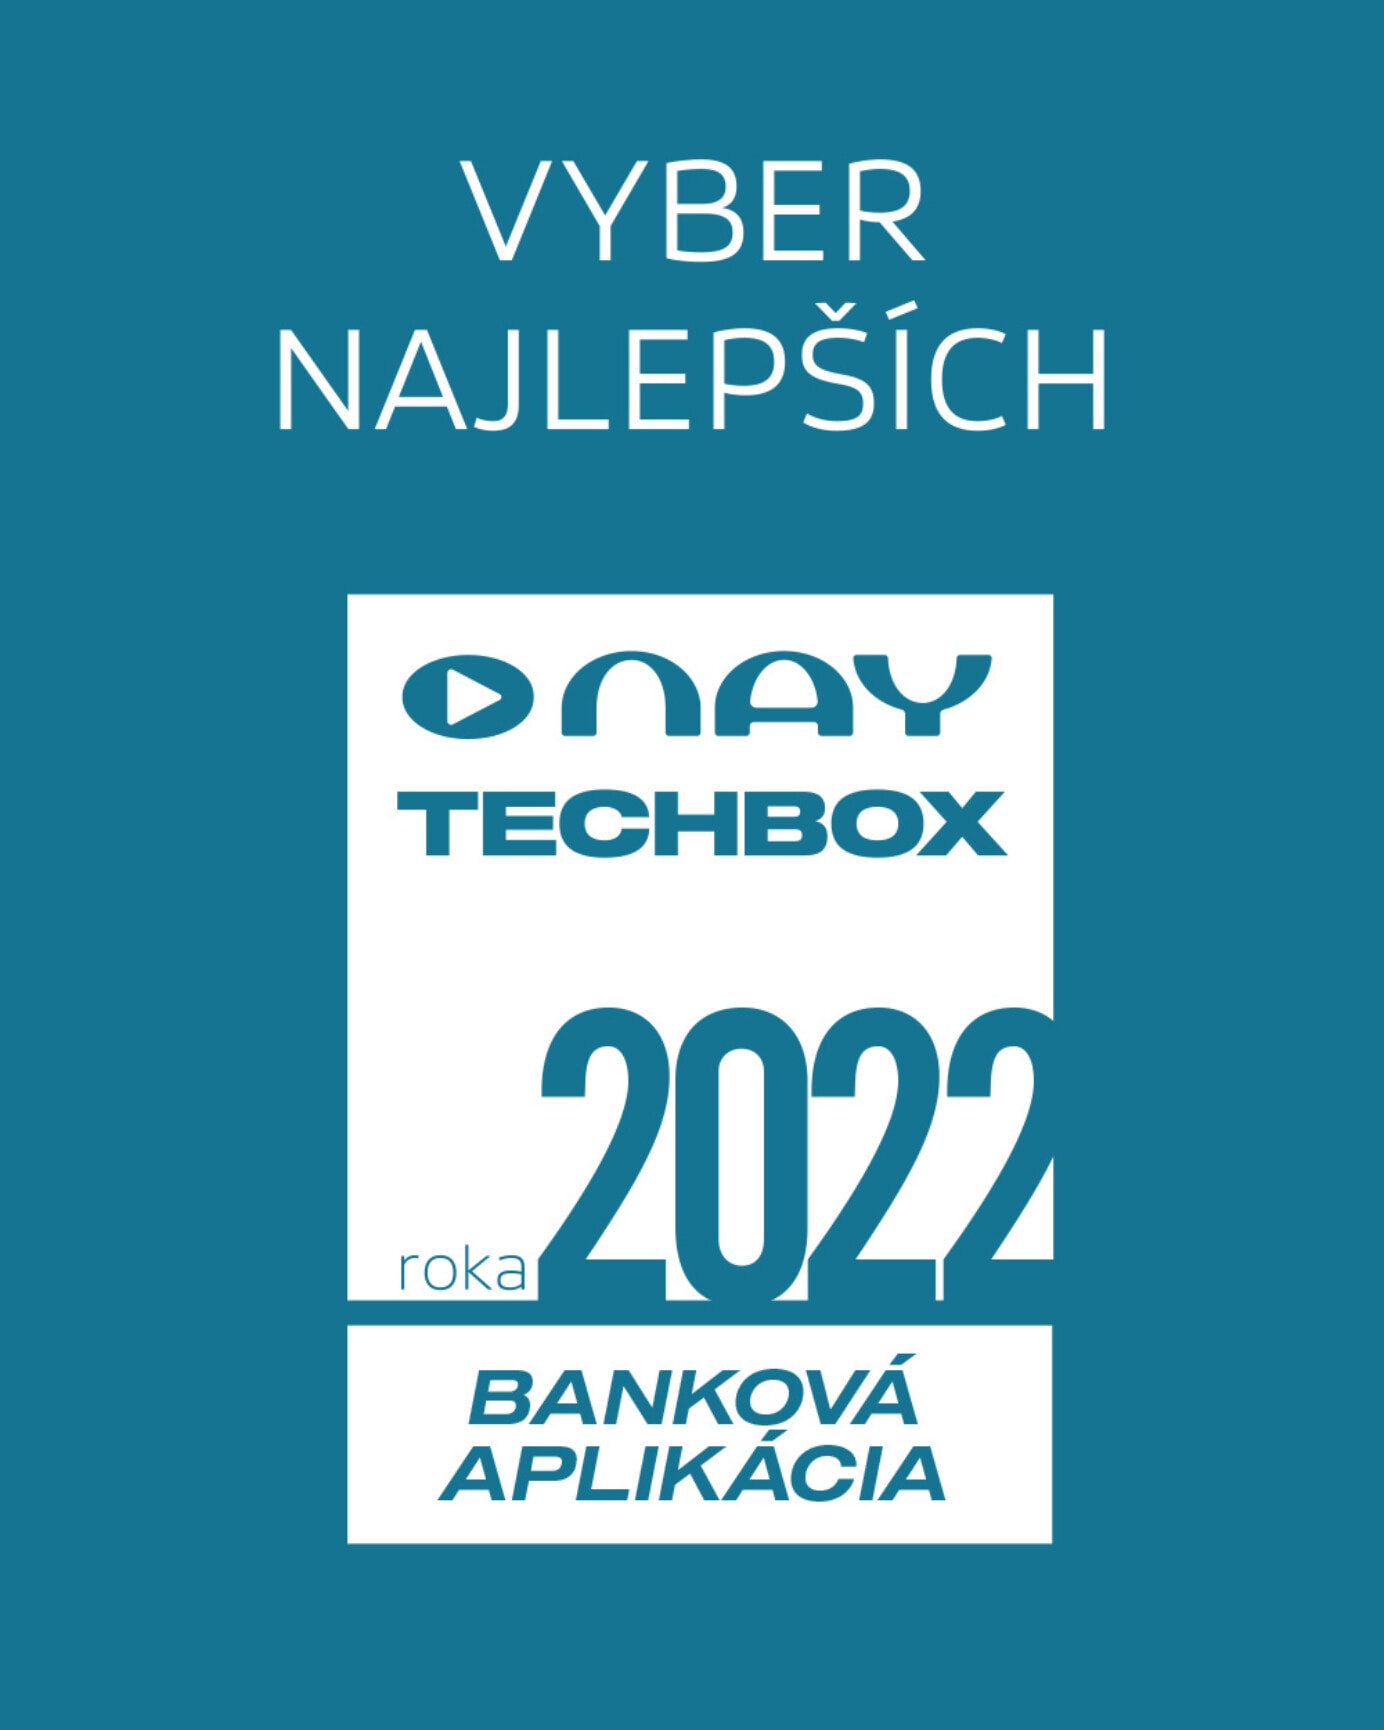 Hľadáme NAY TECHBOX BANKOVÚ APLIKÁCIU roka 2022. Hlasujte a vyhrajte!